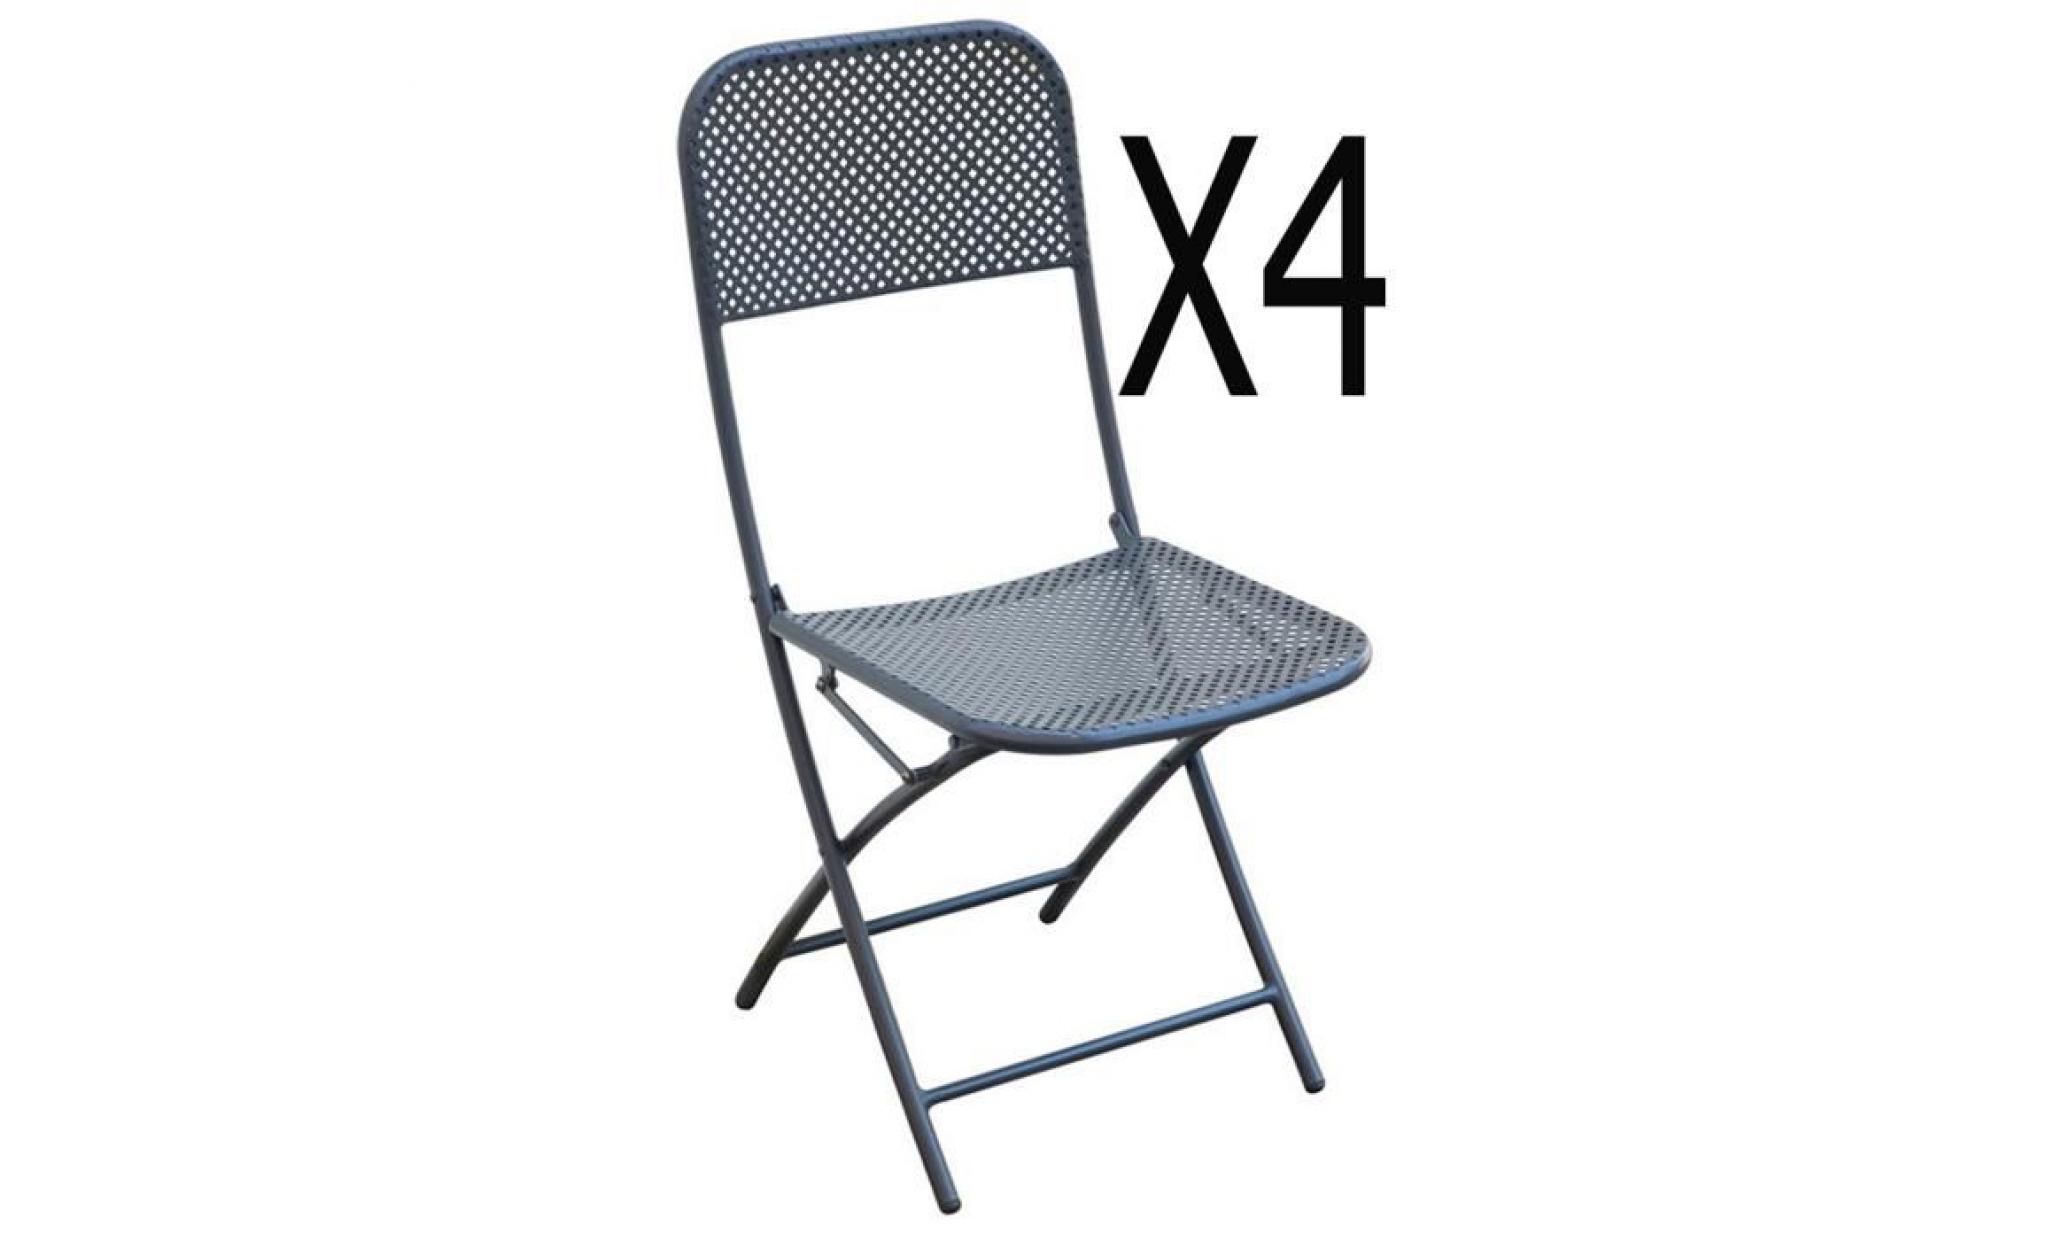 lot de 4 chaises de jardin coloris gris anthracite   dim : 40 x 57 x 89 cm   a usage professionnel.